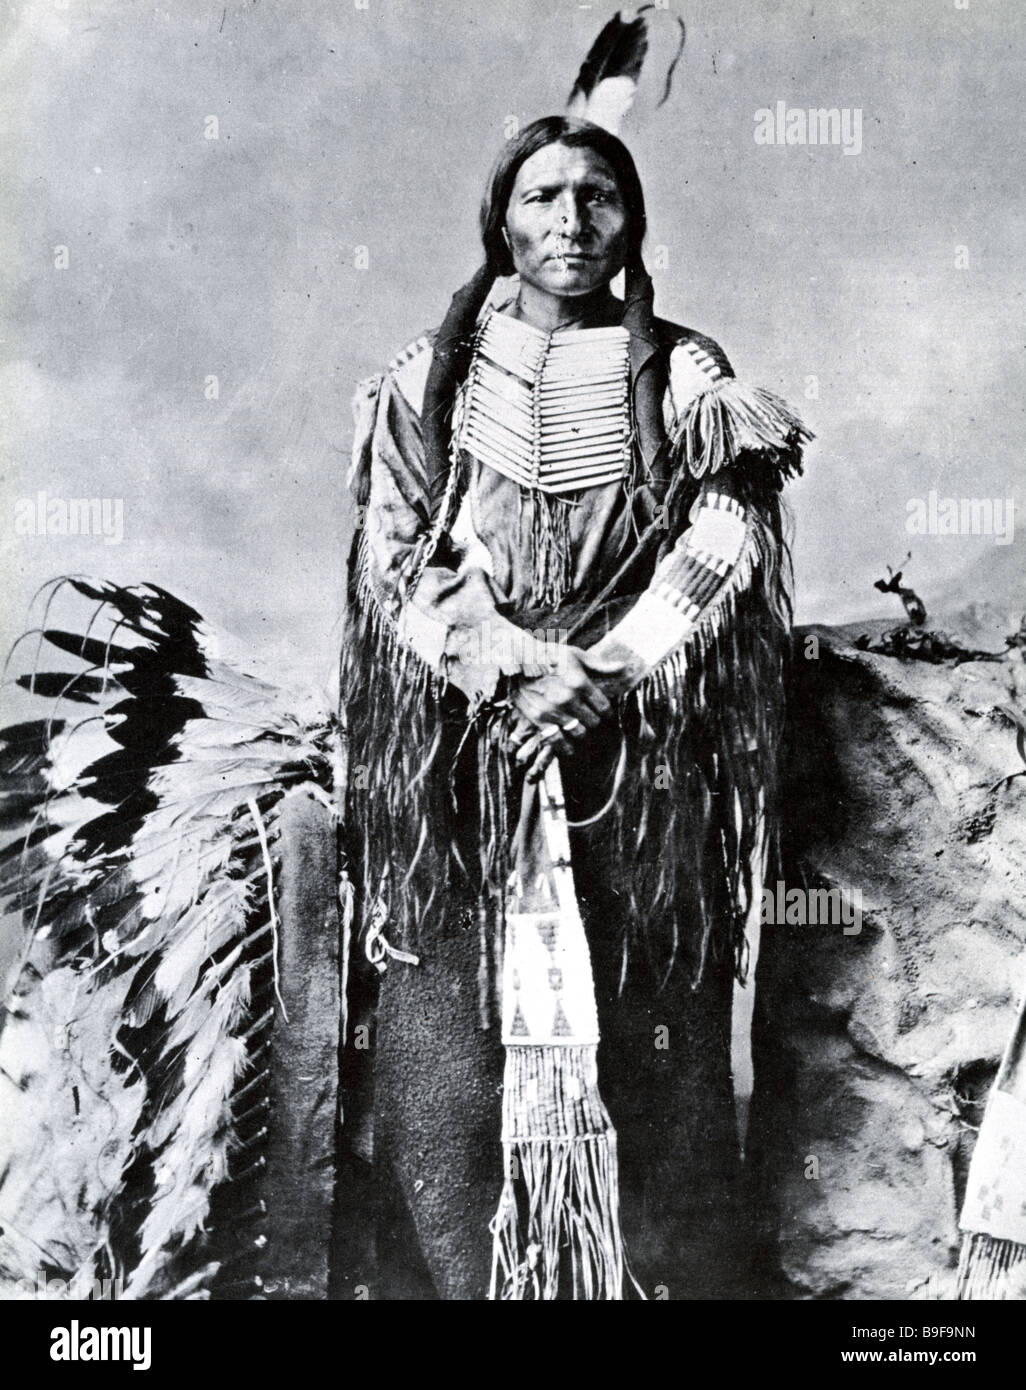 LITTLE BIG MAN porte-parole des Sioux Oglala dans les guerres indiennes des années 1870 Banque D'Images